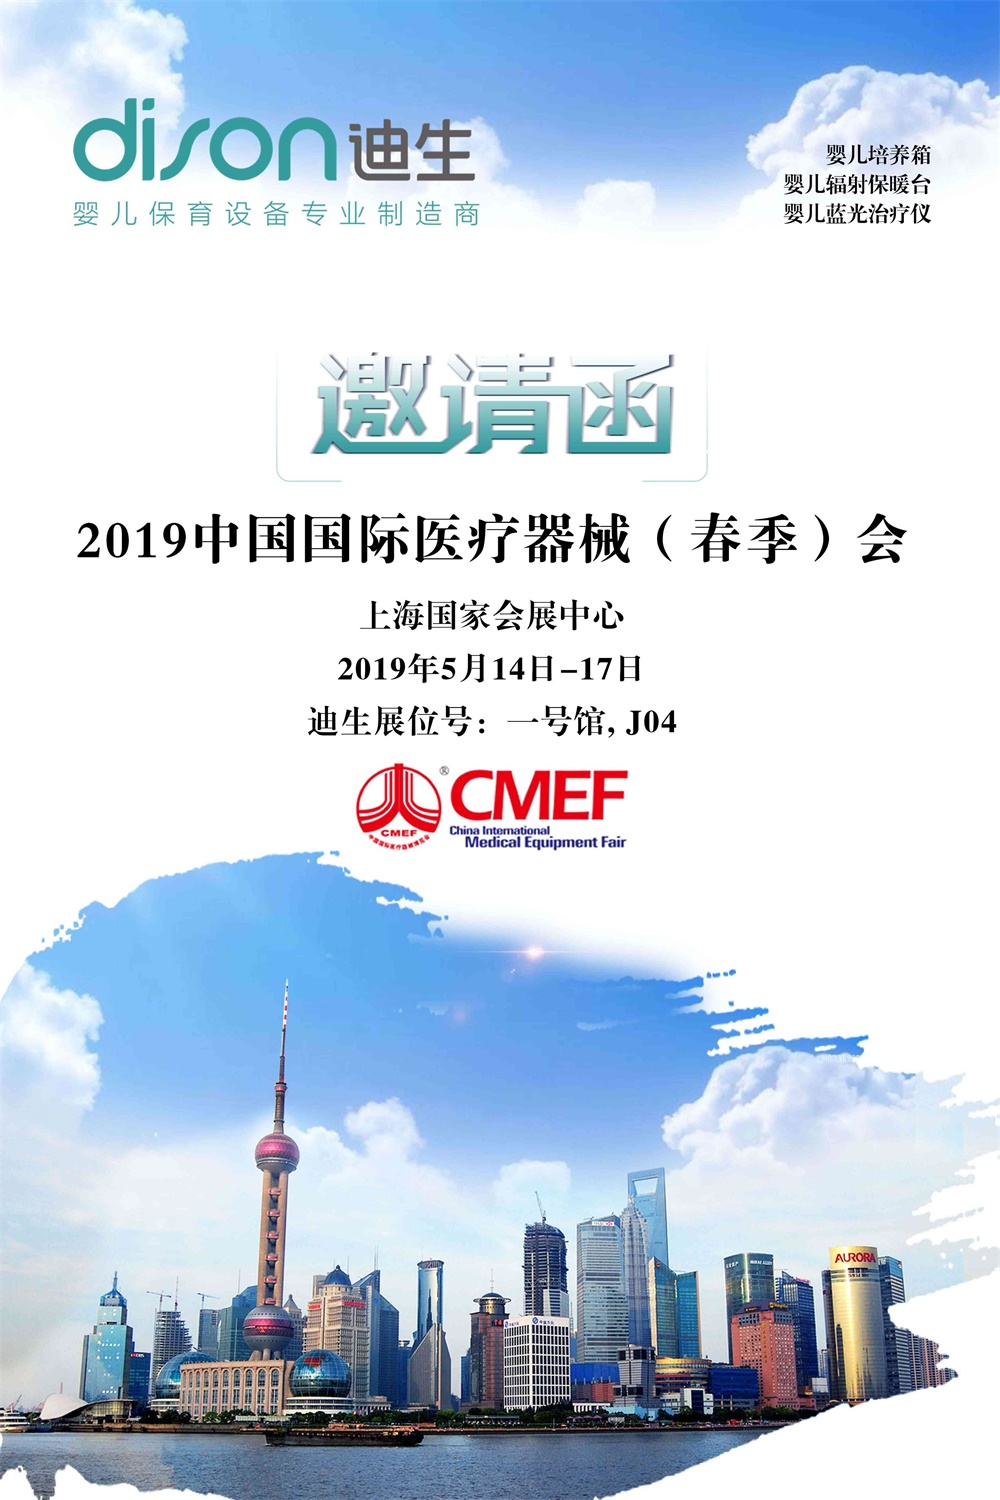 迪生邀您相聚CMEF上海